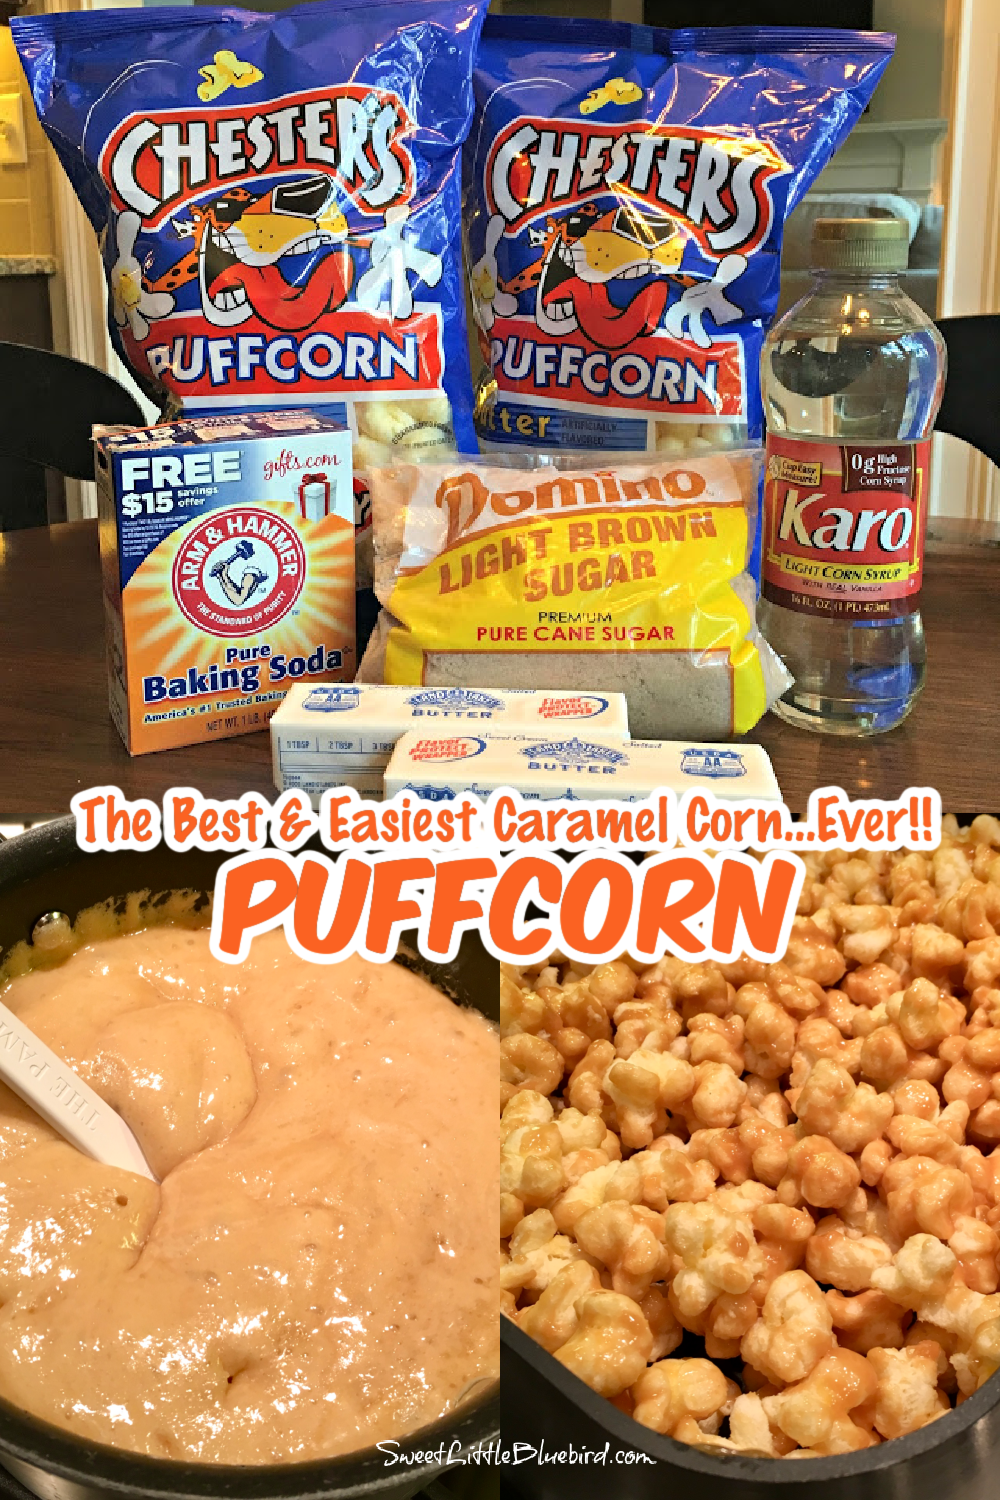 Homemade Caramel Corn with Karo Syrup - CopyKat Recipes